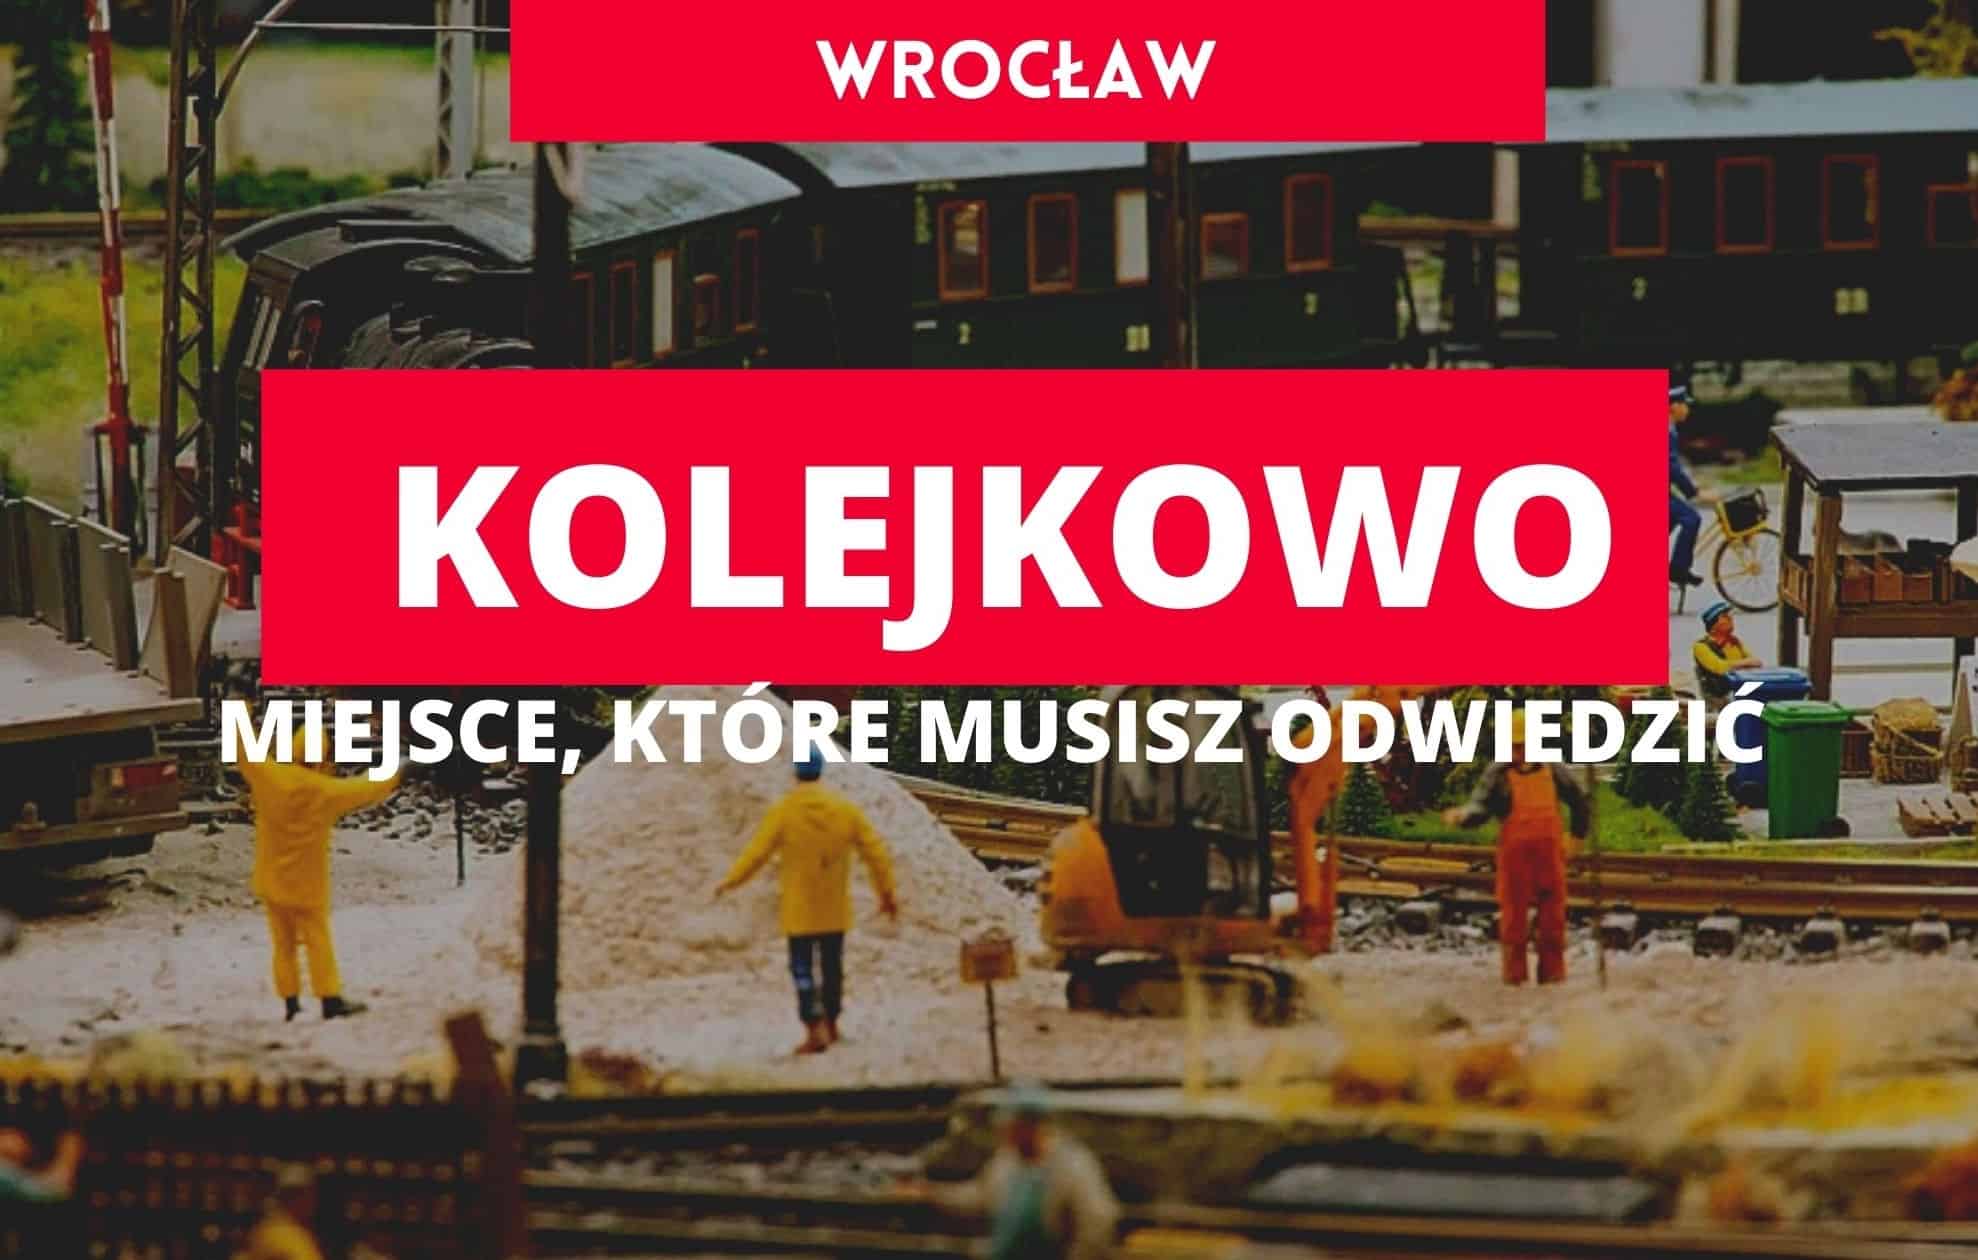 Kolejkowo Wrocław